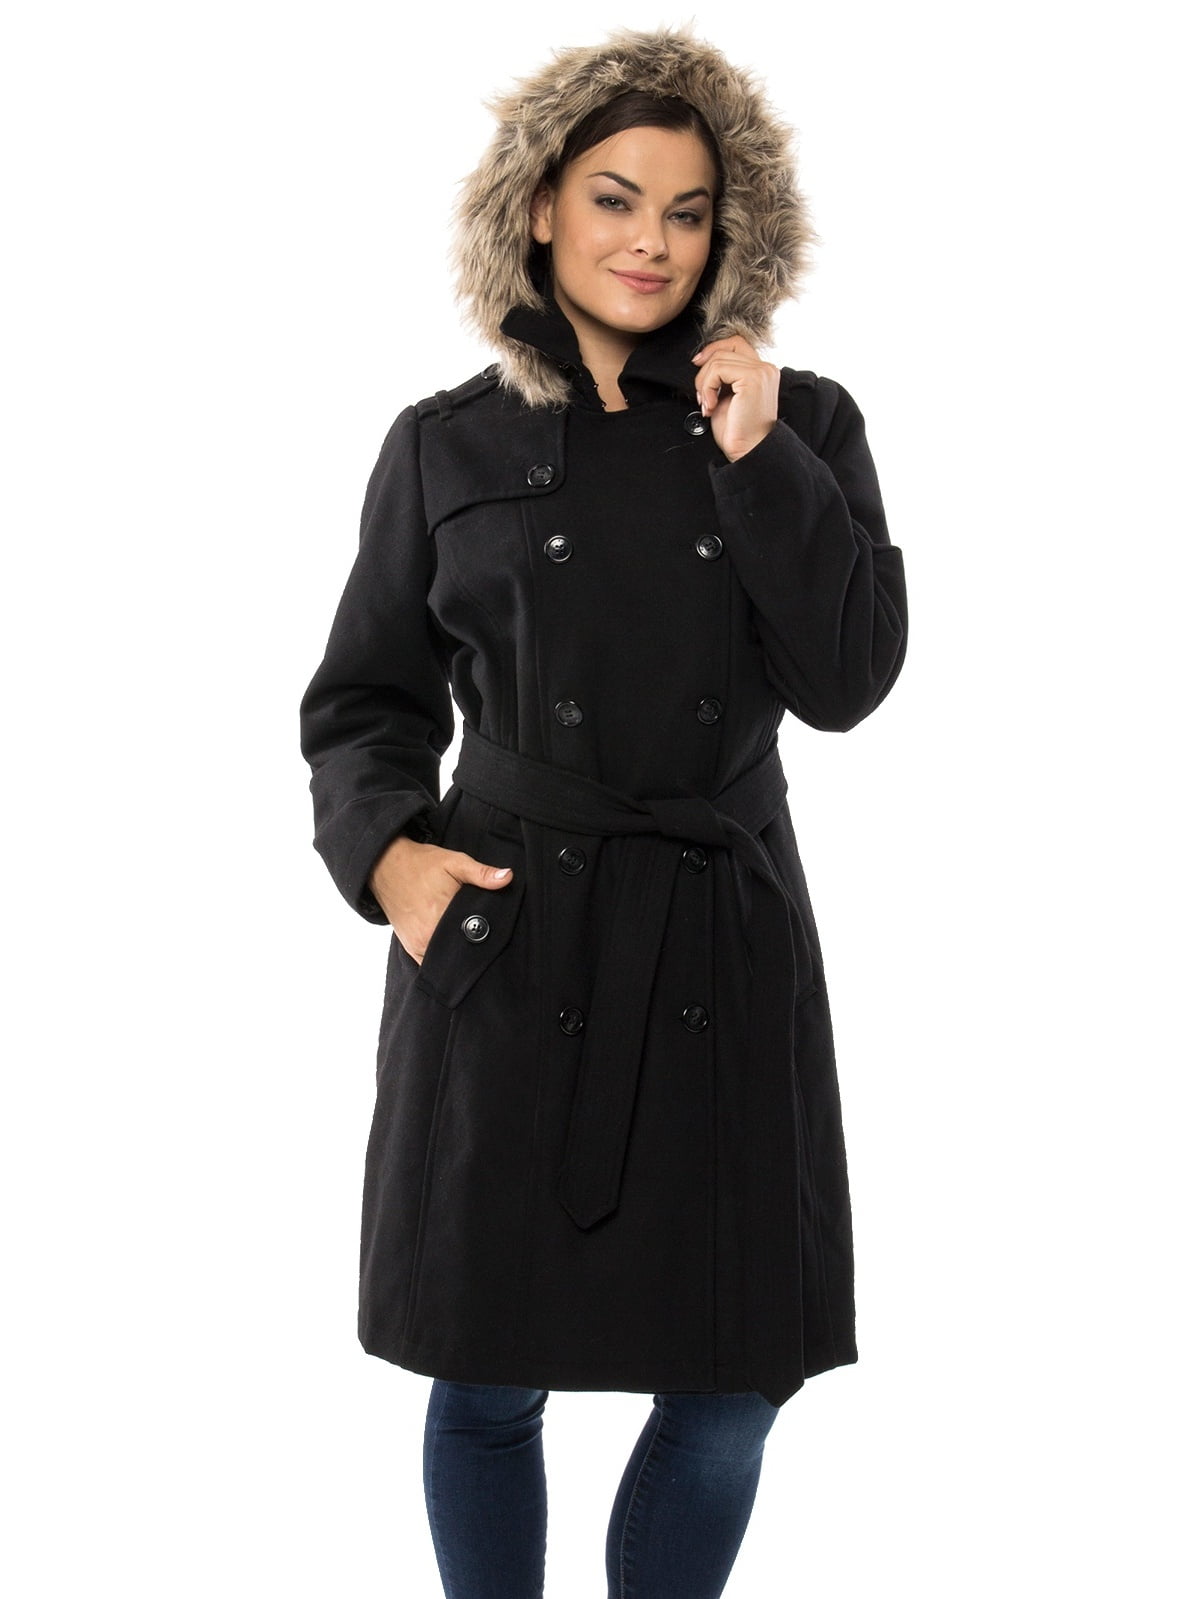 women's trench coat with fur hood